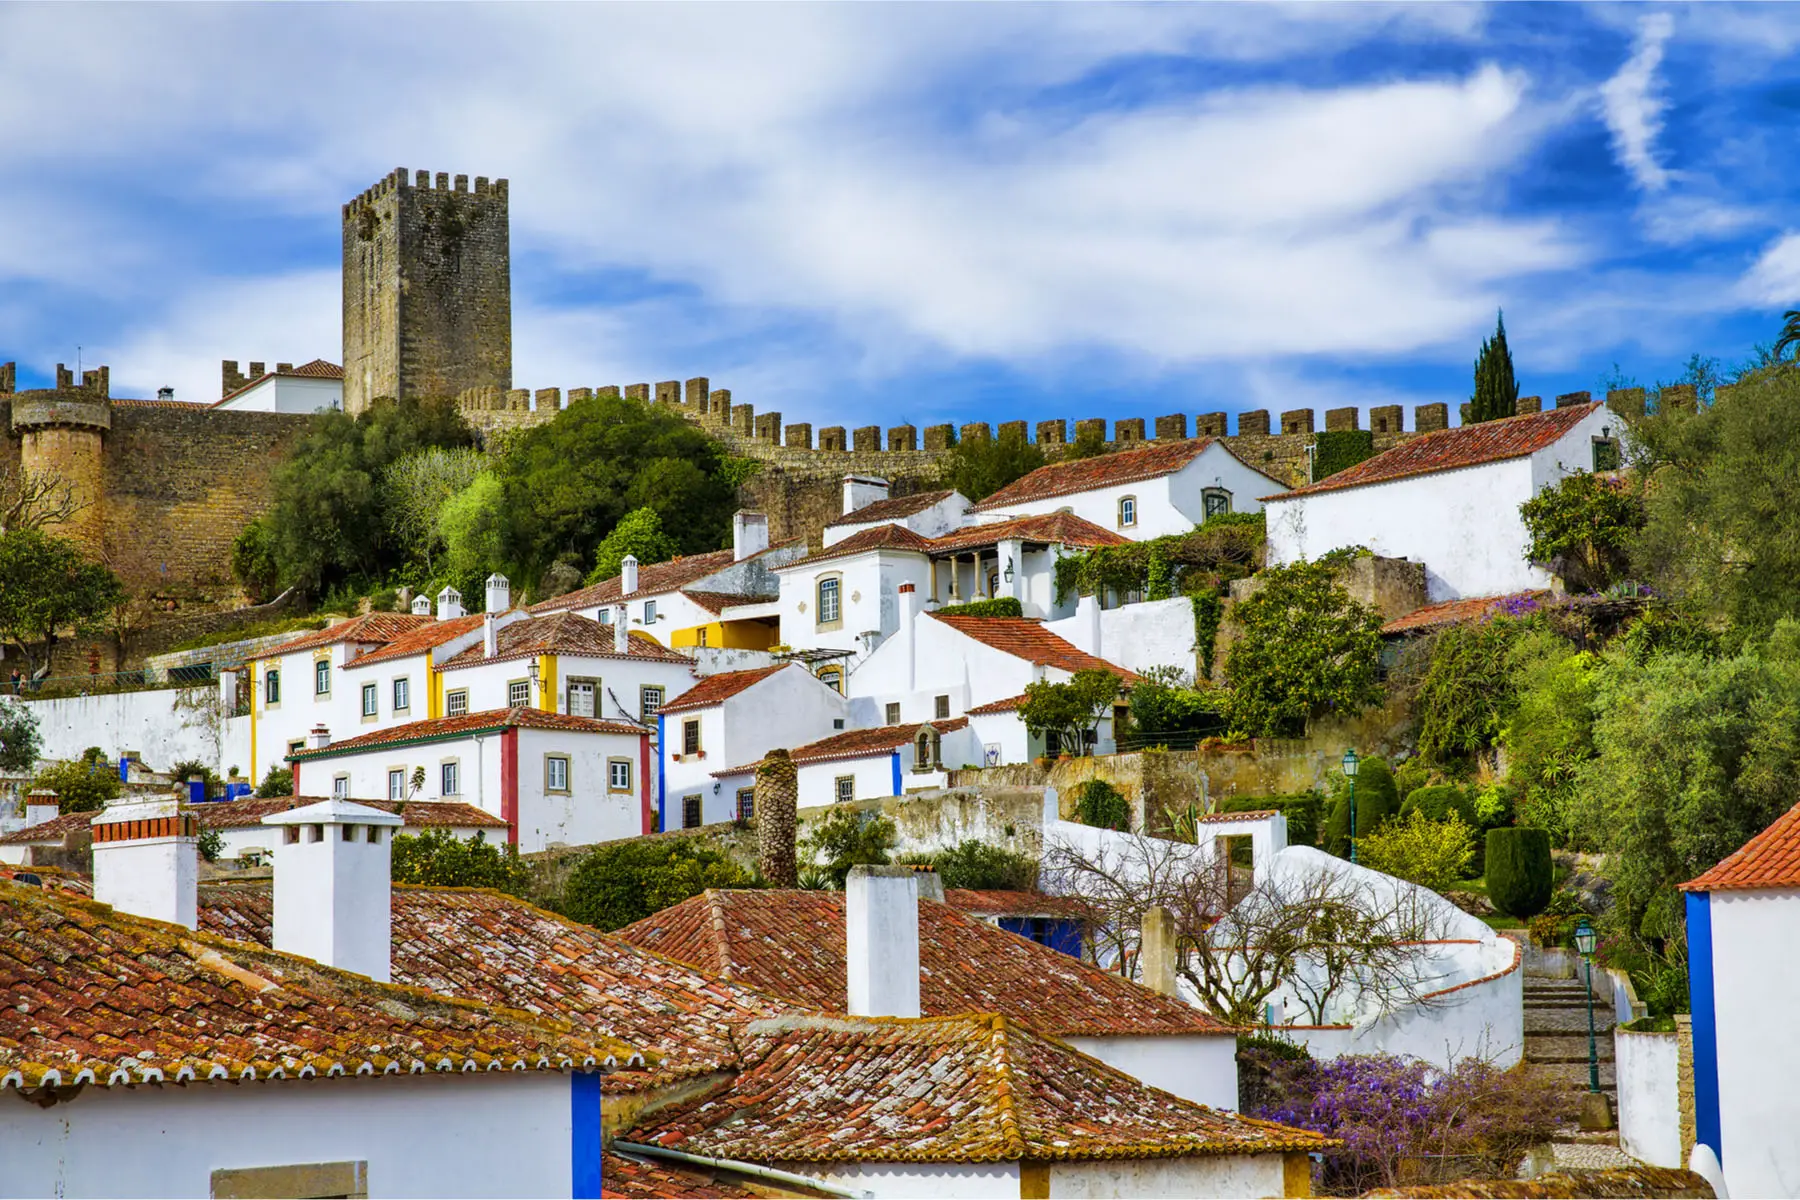 Obidos village in Portugal